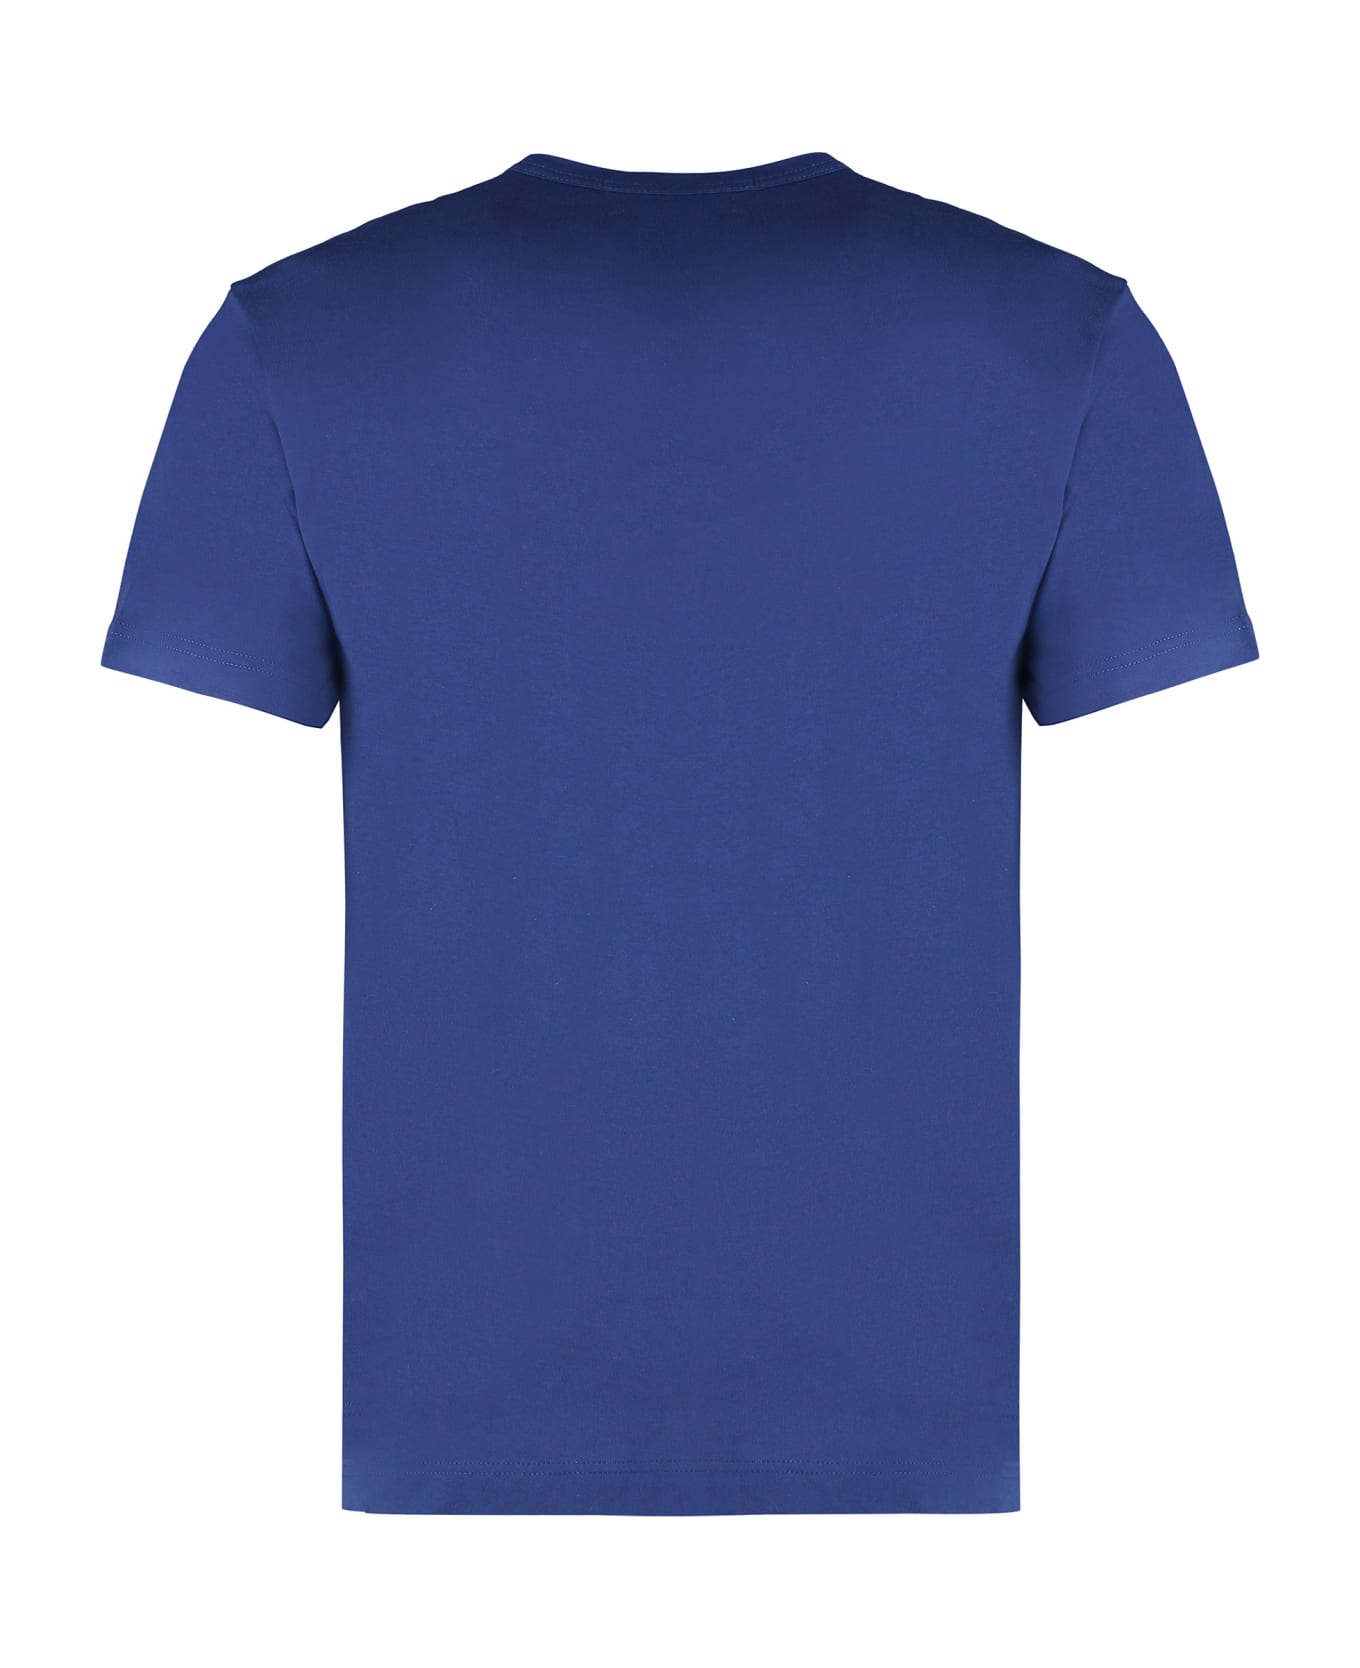 Comme des Garçons Shirt Cotton Crew-neck T-shirt - blue